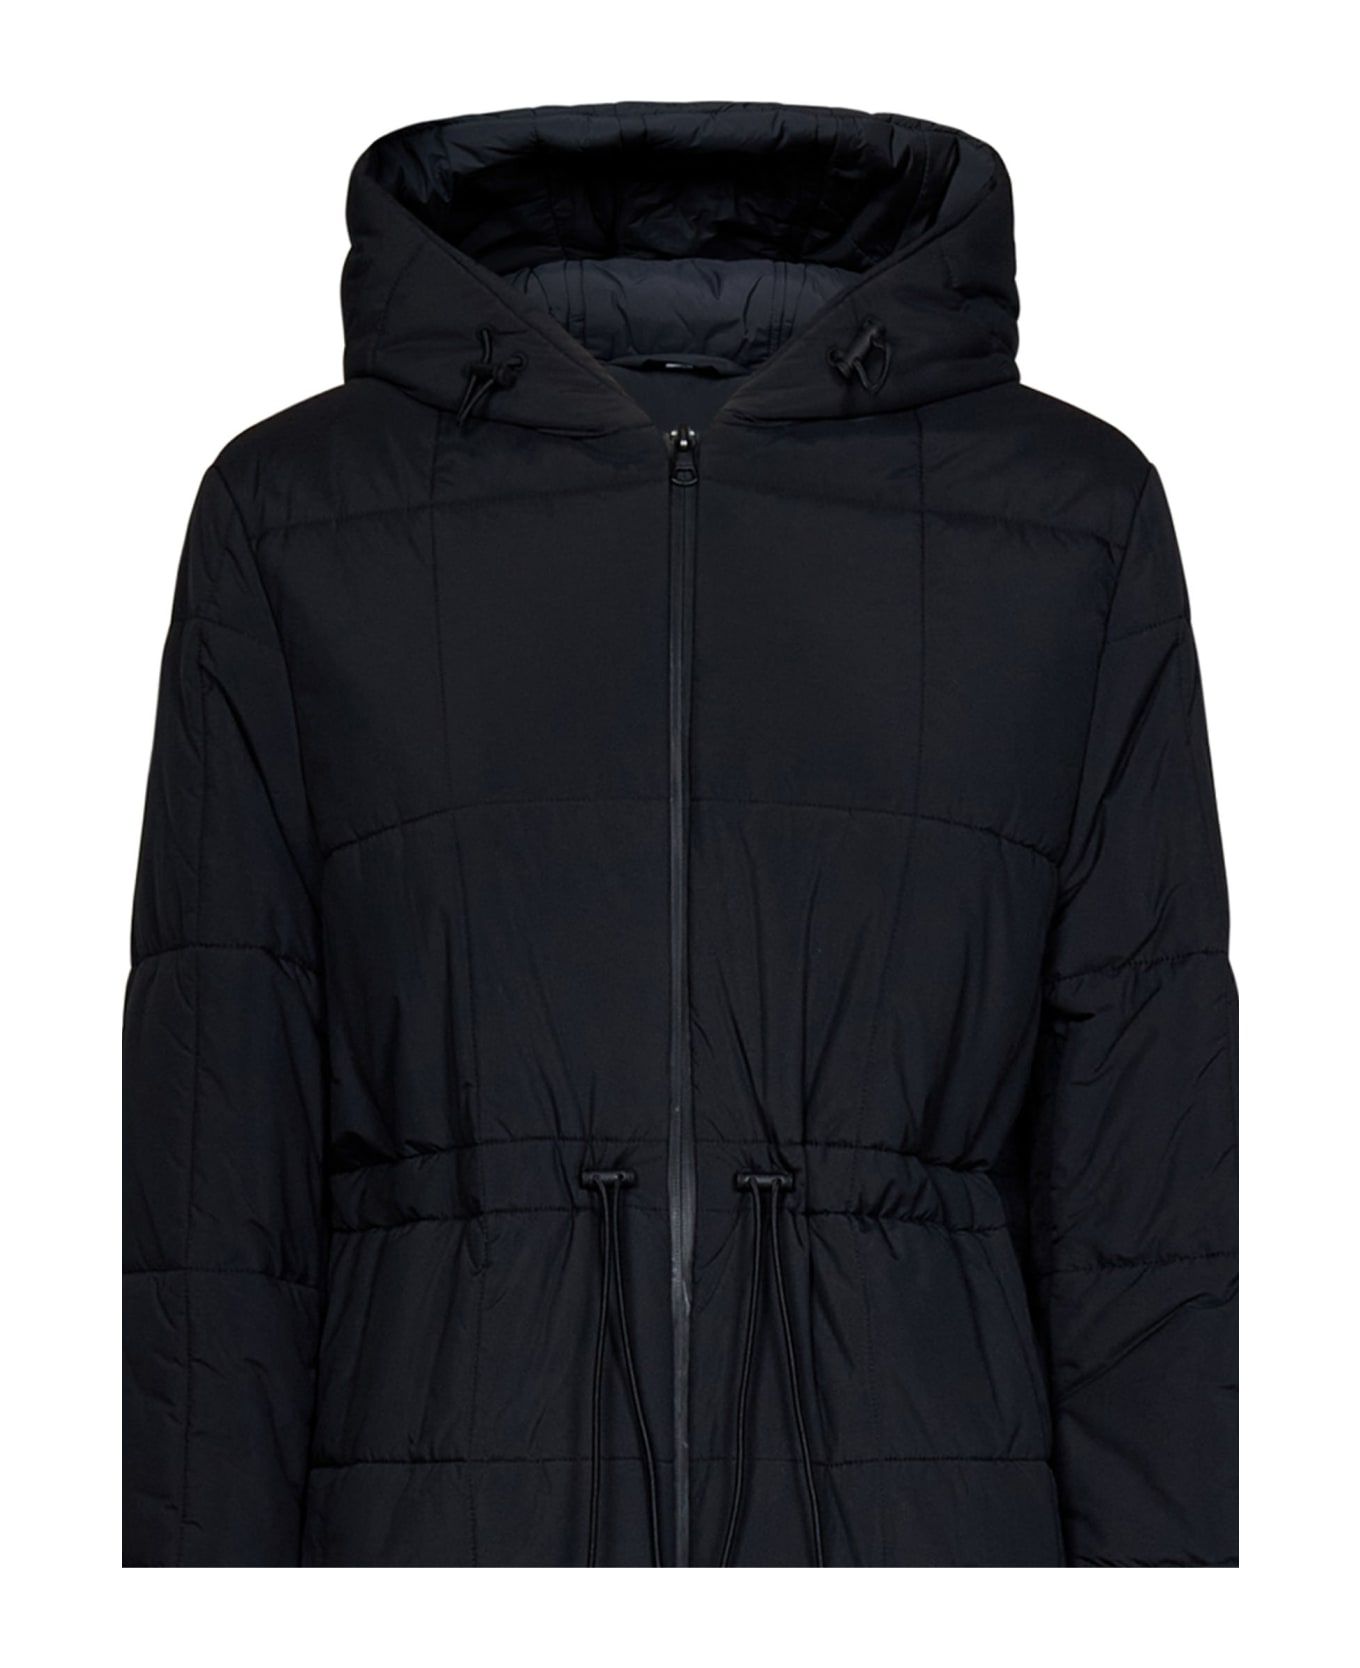 Burberry Cleobury Jacket - Black コート